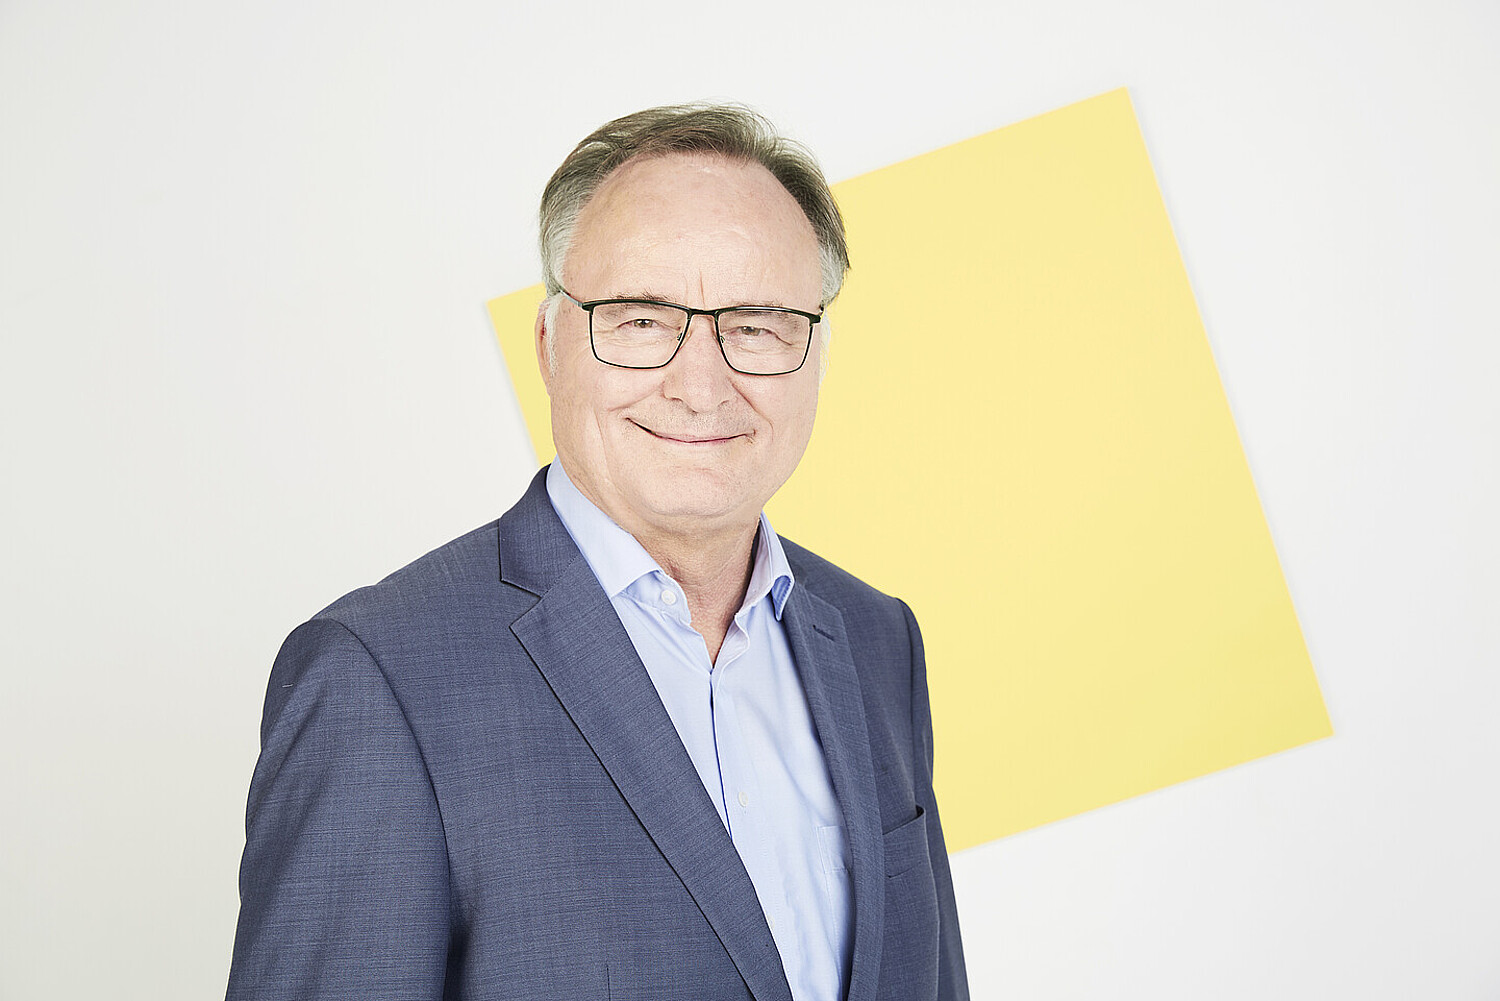 Porträt von Erhard Rahm vor einer quadratischen gelben Fläche